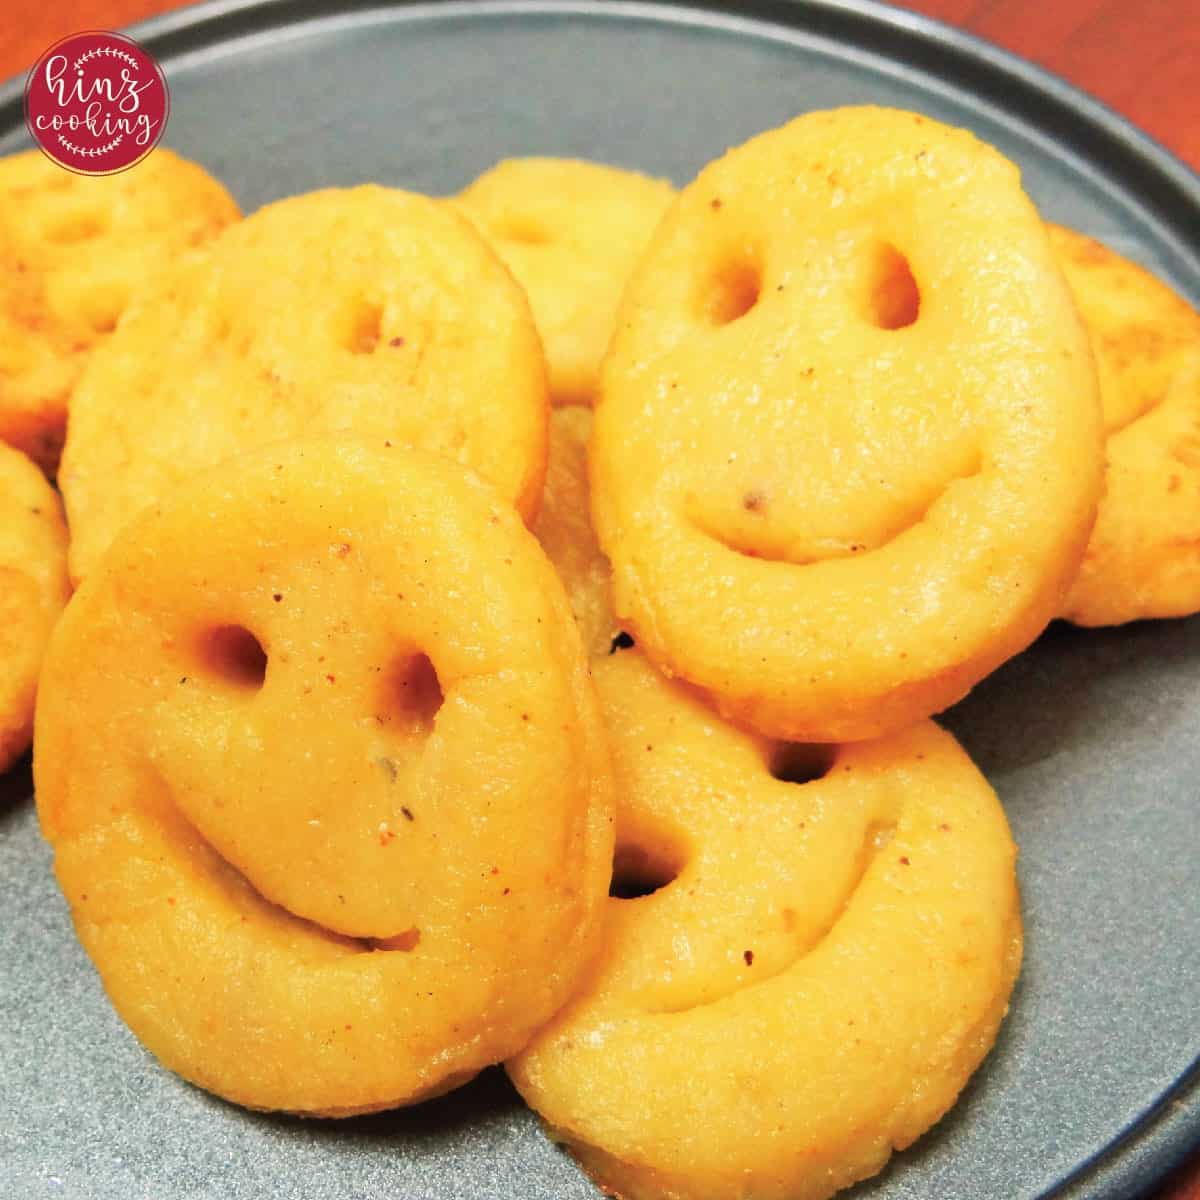 potato smiley faces recipe